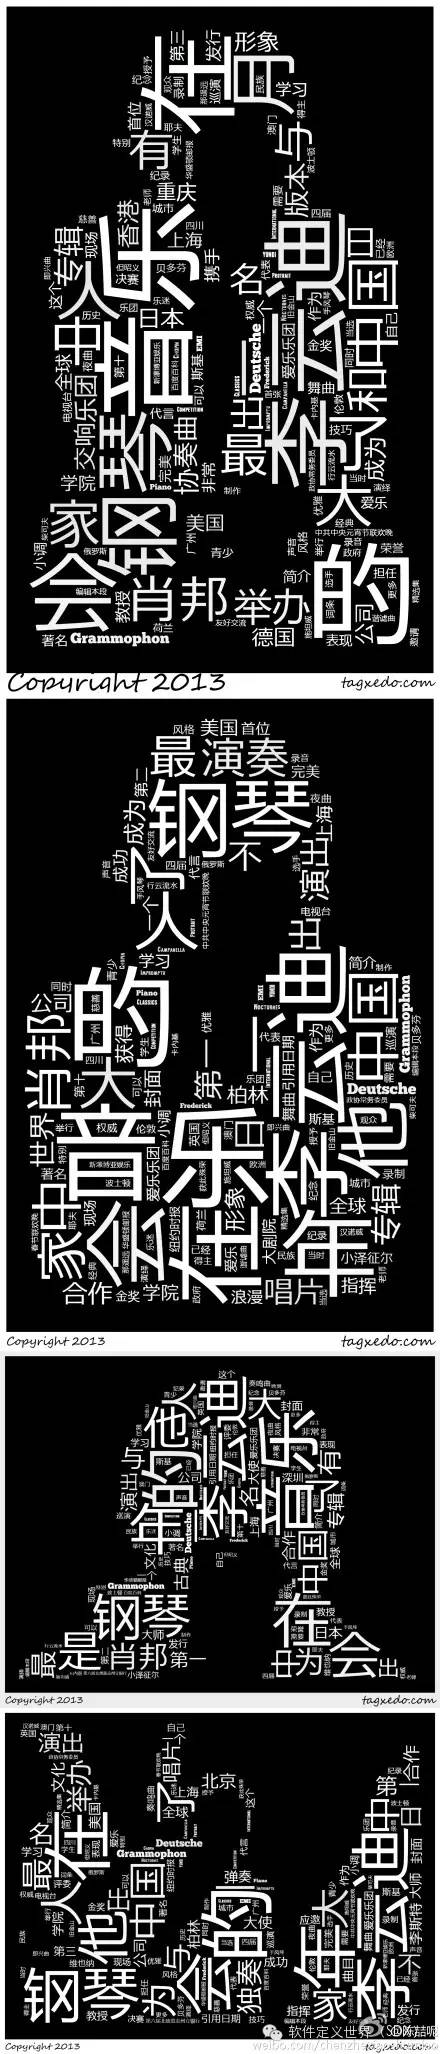 ☞【实践】词云可视化——中文分词与词云制作